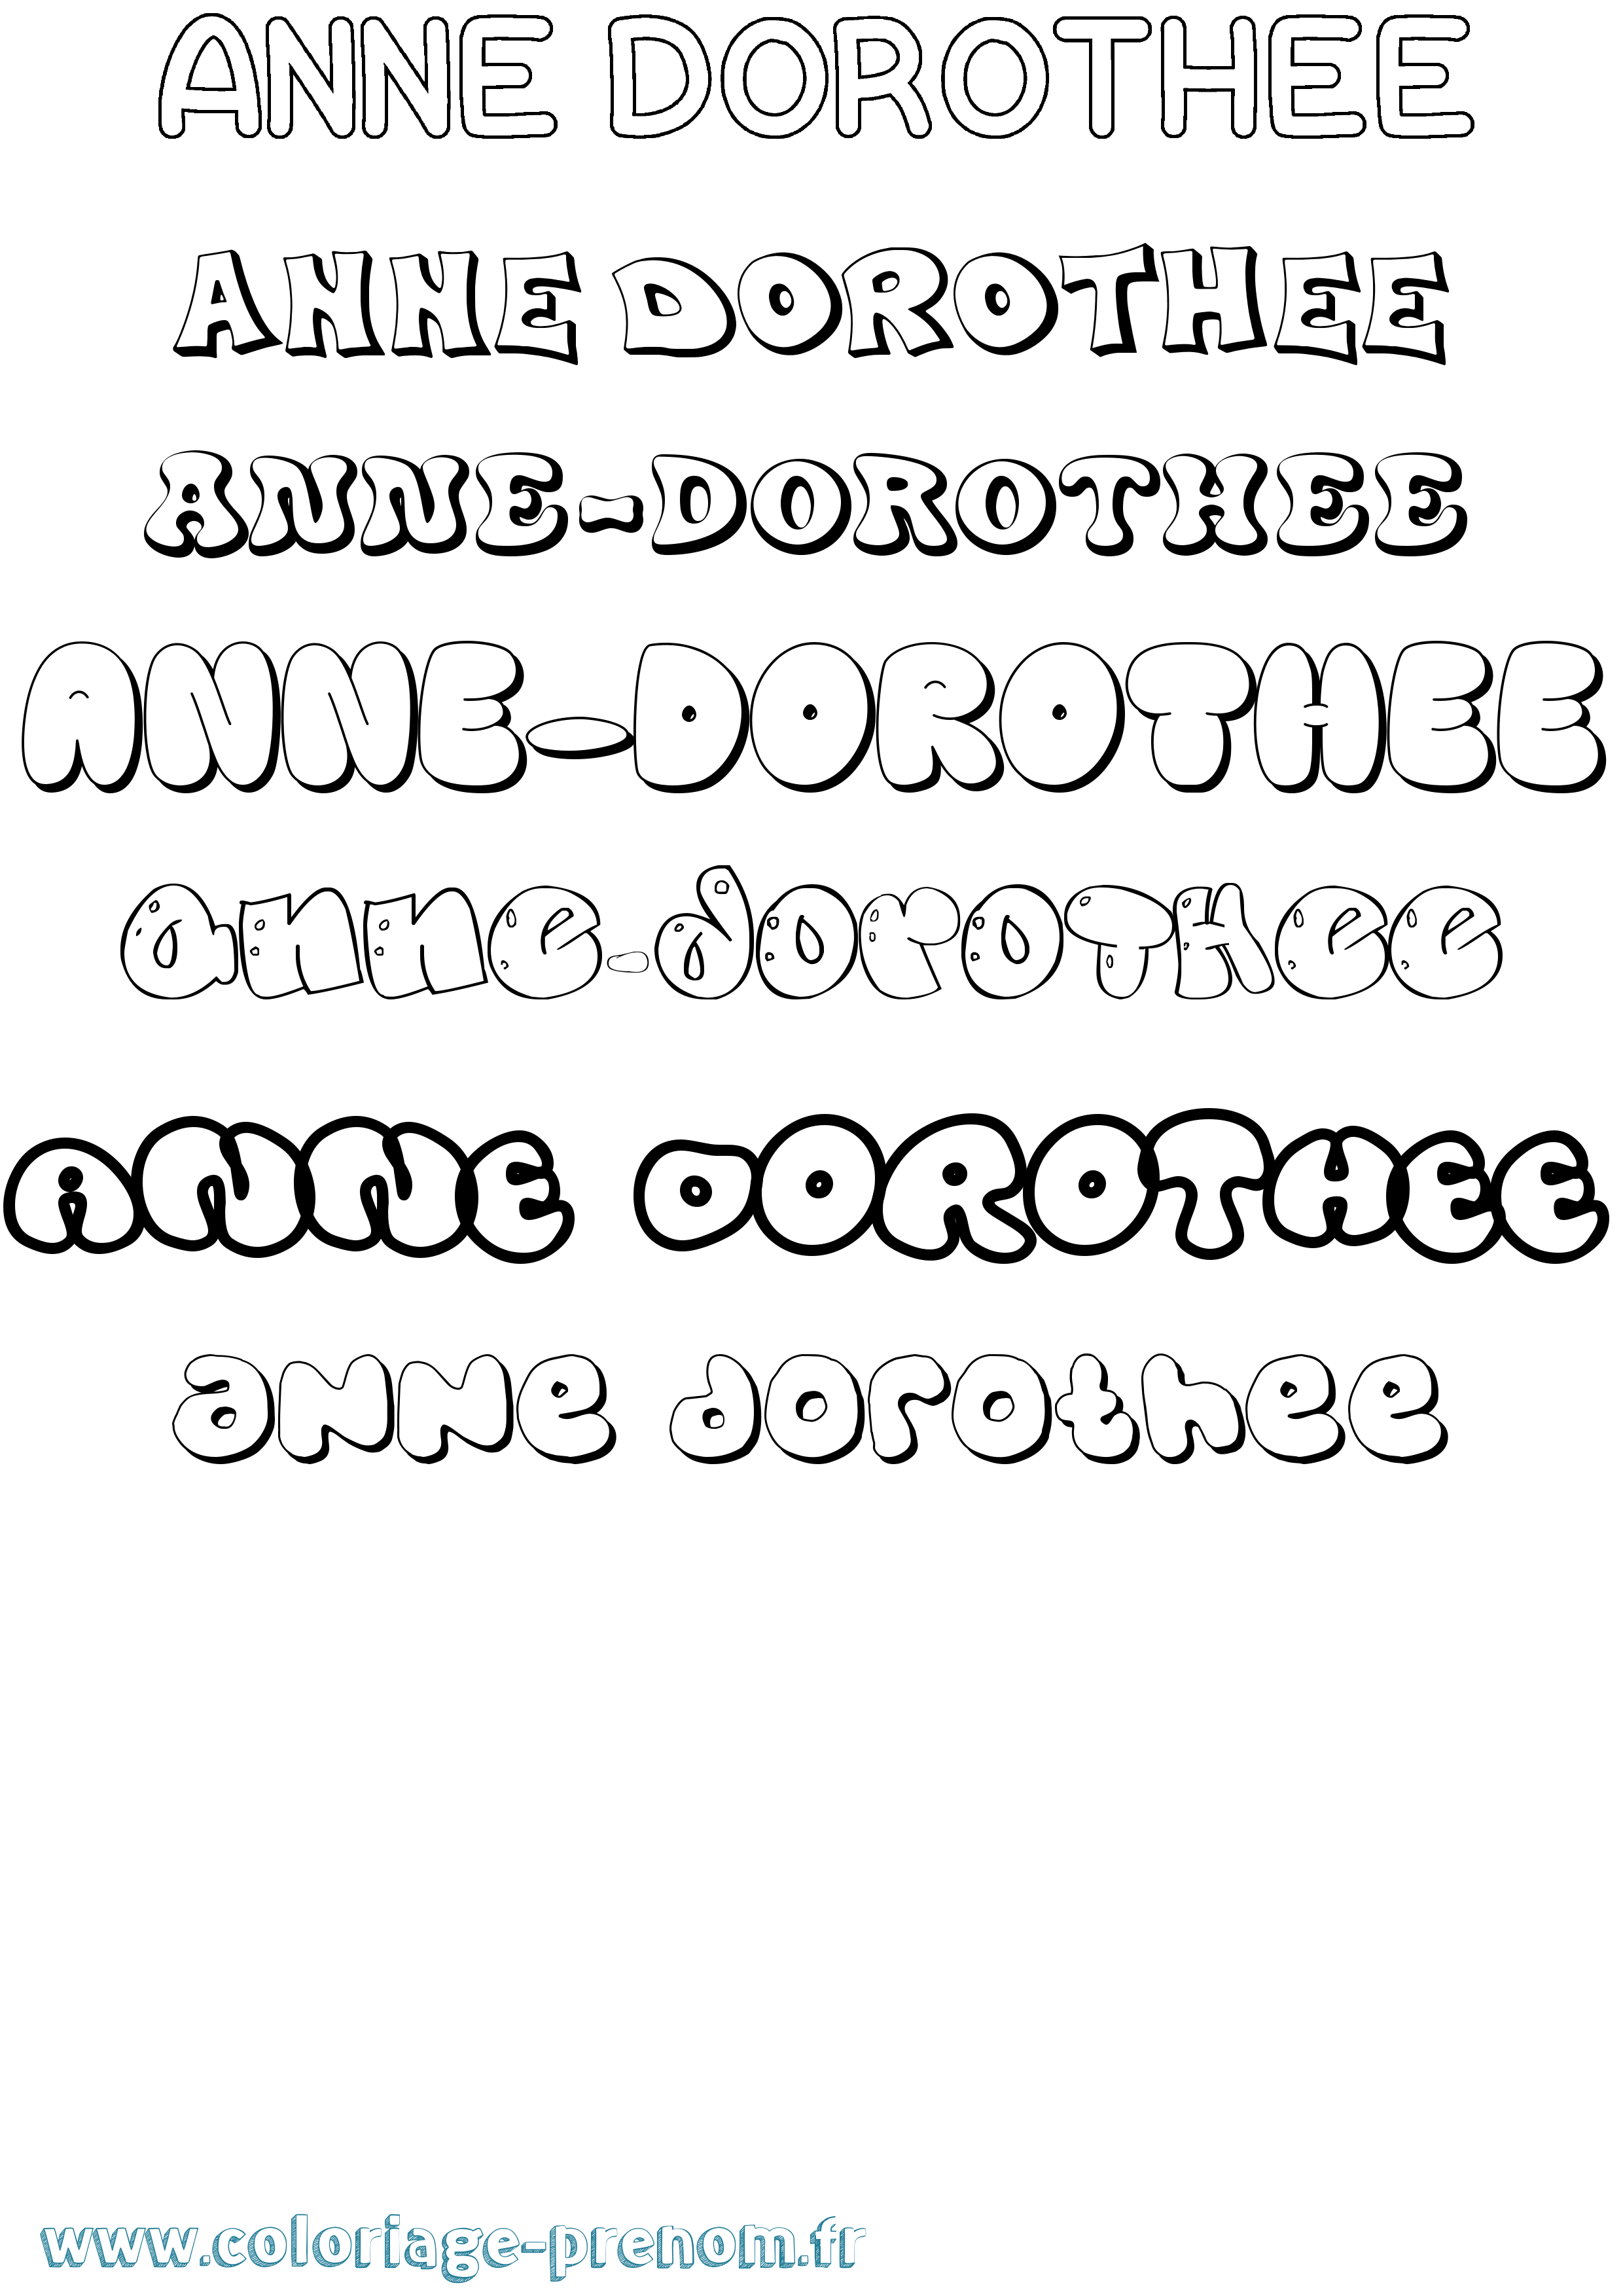 Coloriage prénom Anne-Dorothee Bubble